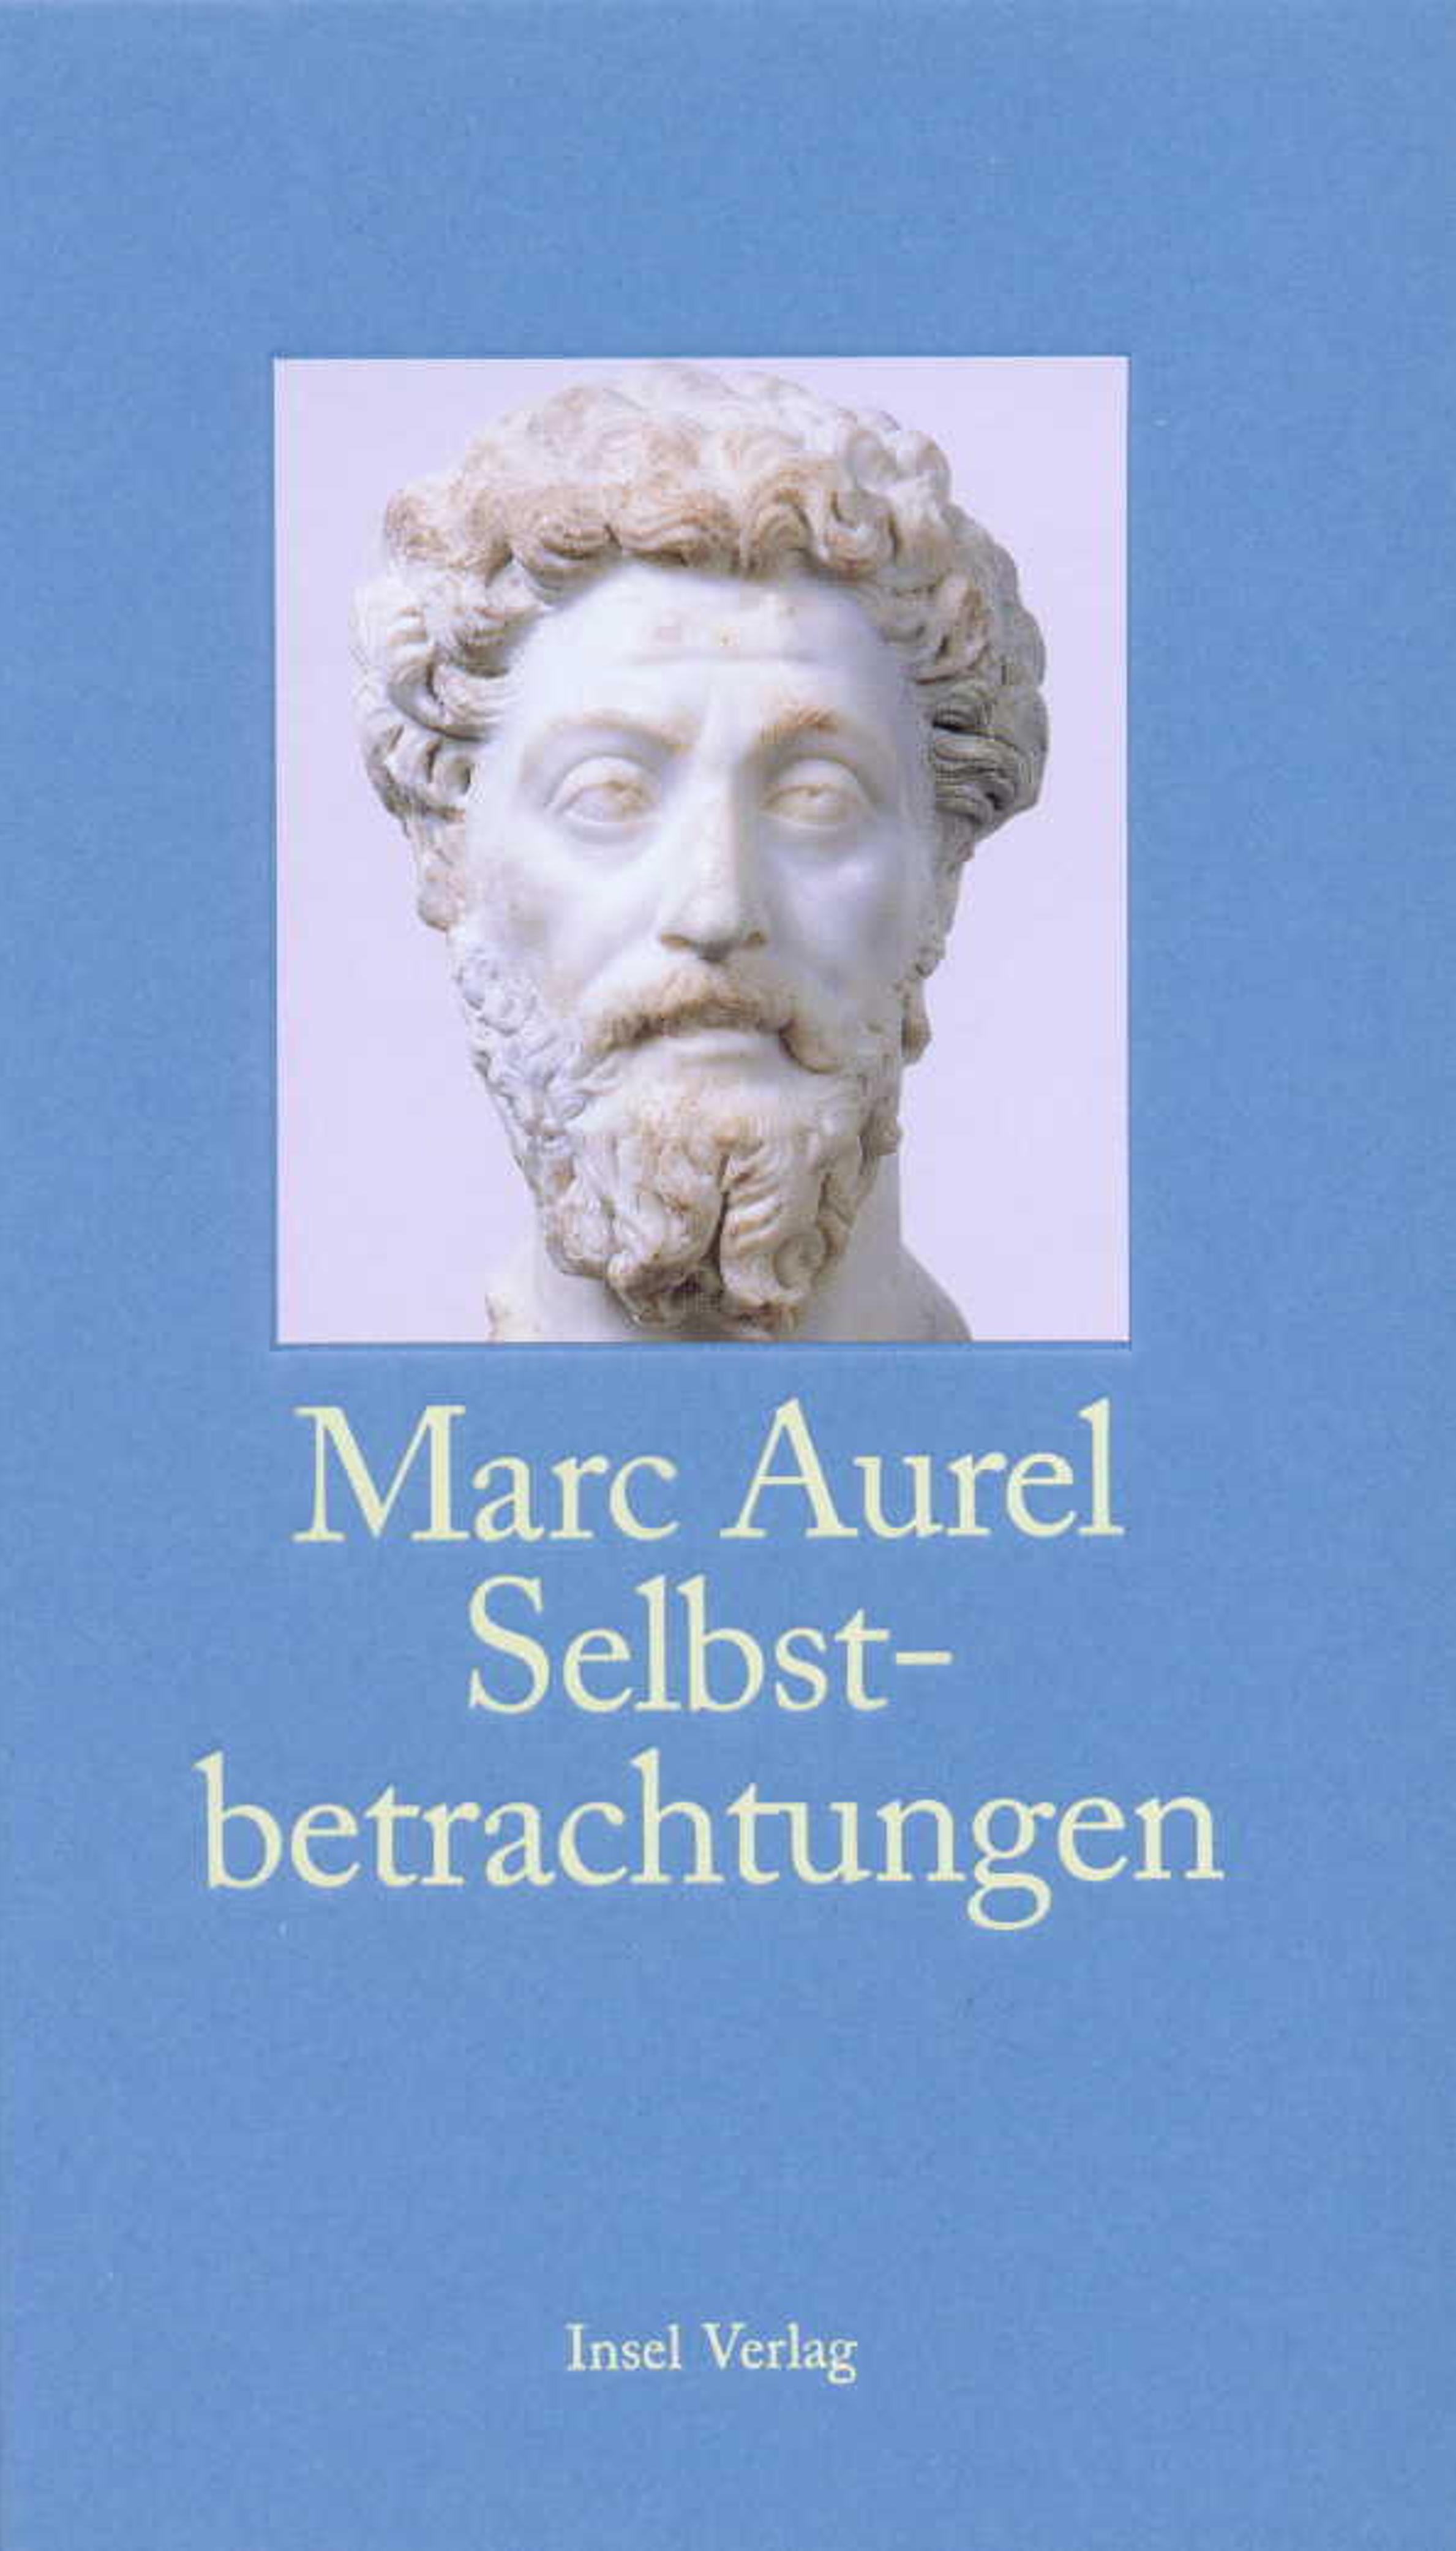 Selbstbetrachtungen. Buch von Marc Aurel (Insel Verlag)